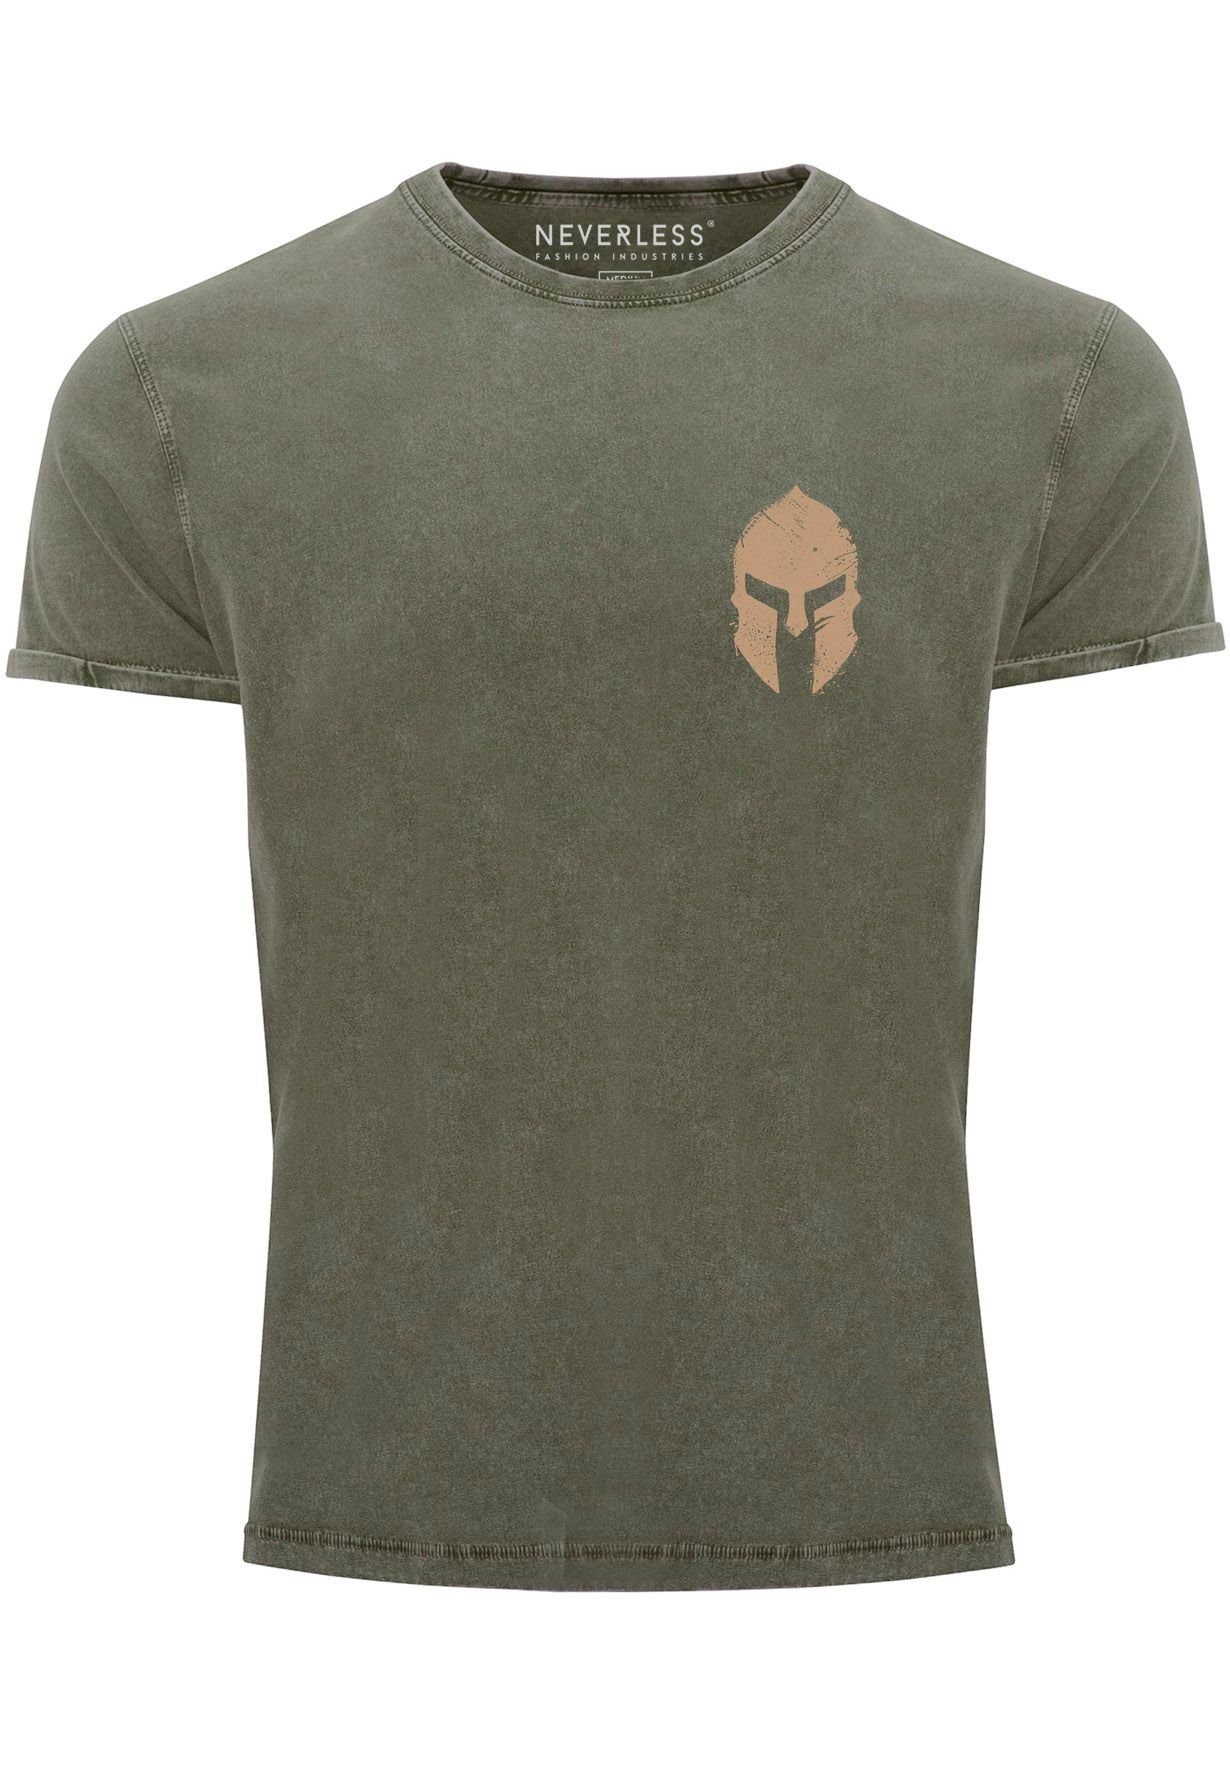 Neverless Print-Shirt Herren Vintage Shirt Logo Print Sparta-Helm Spartaner Gladiator Kriege mit Print oliv